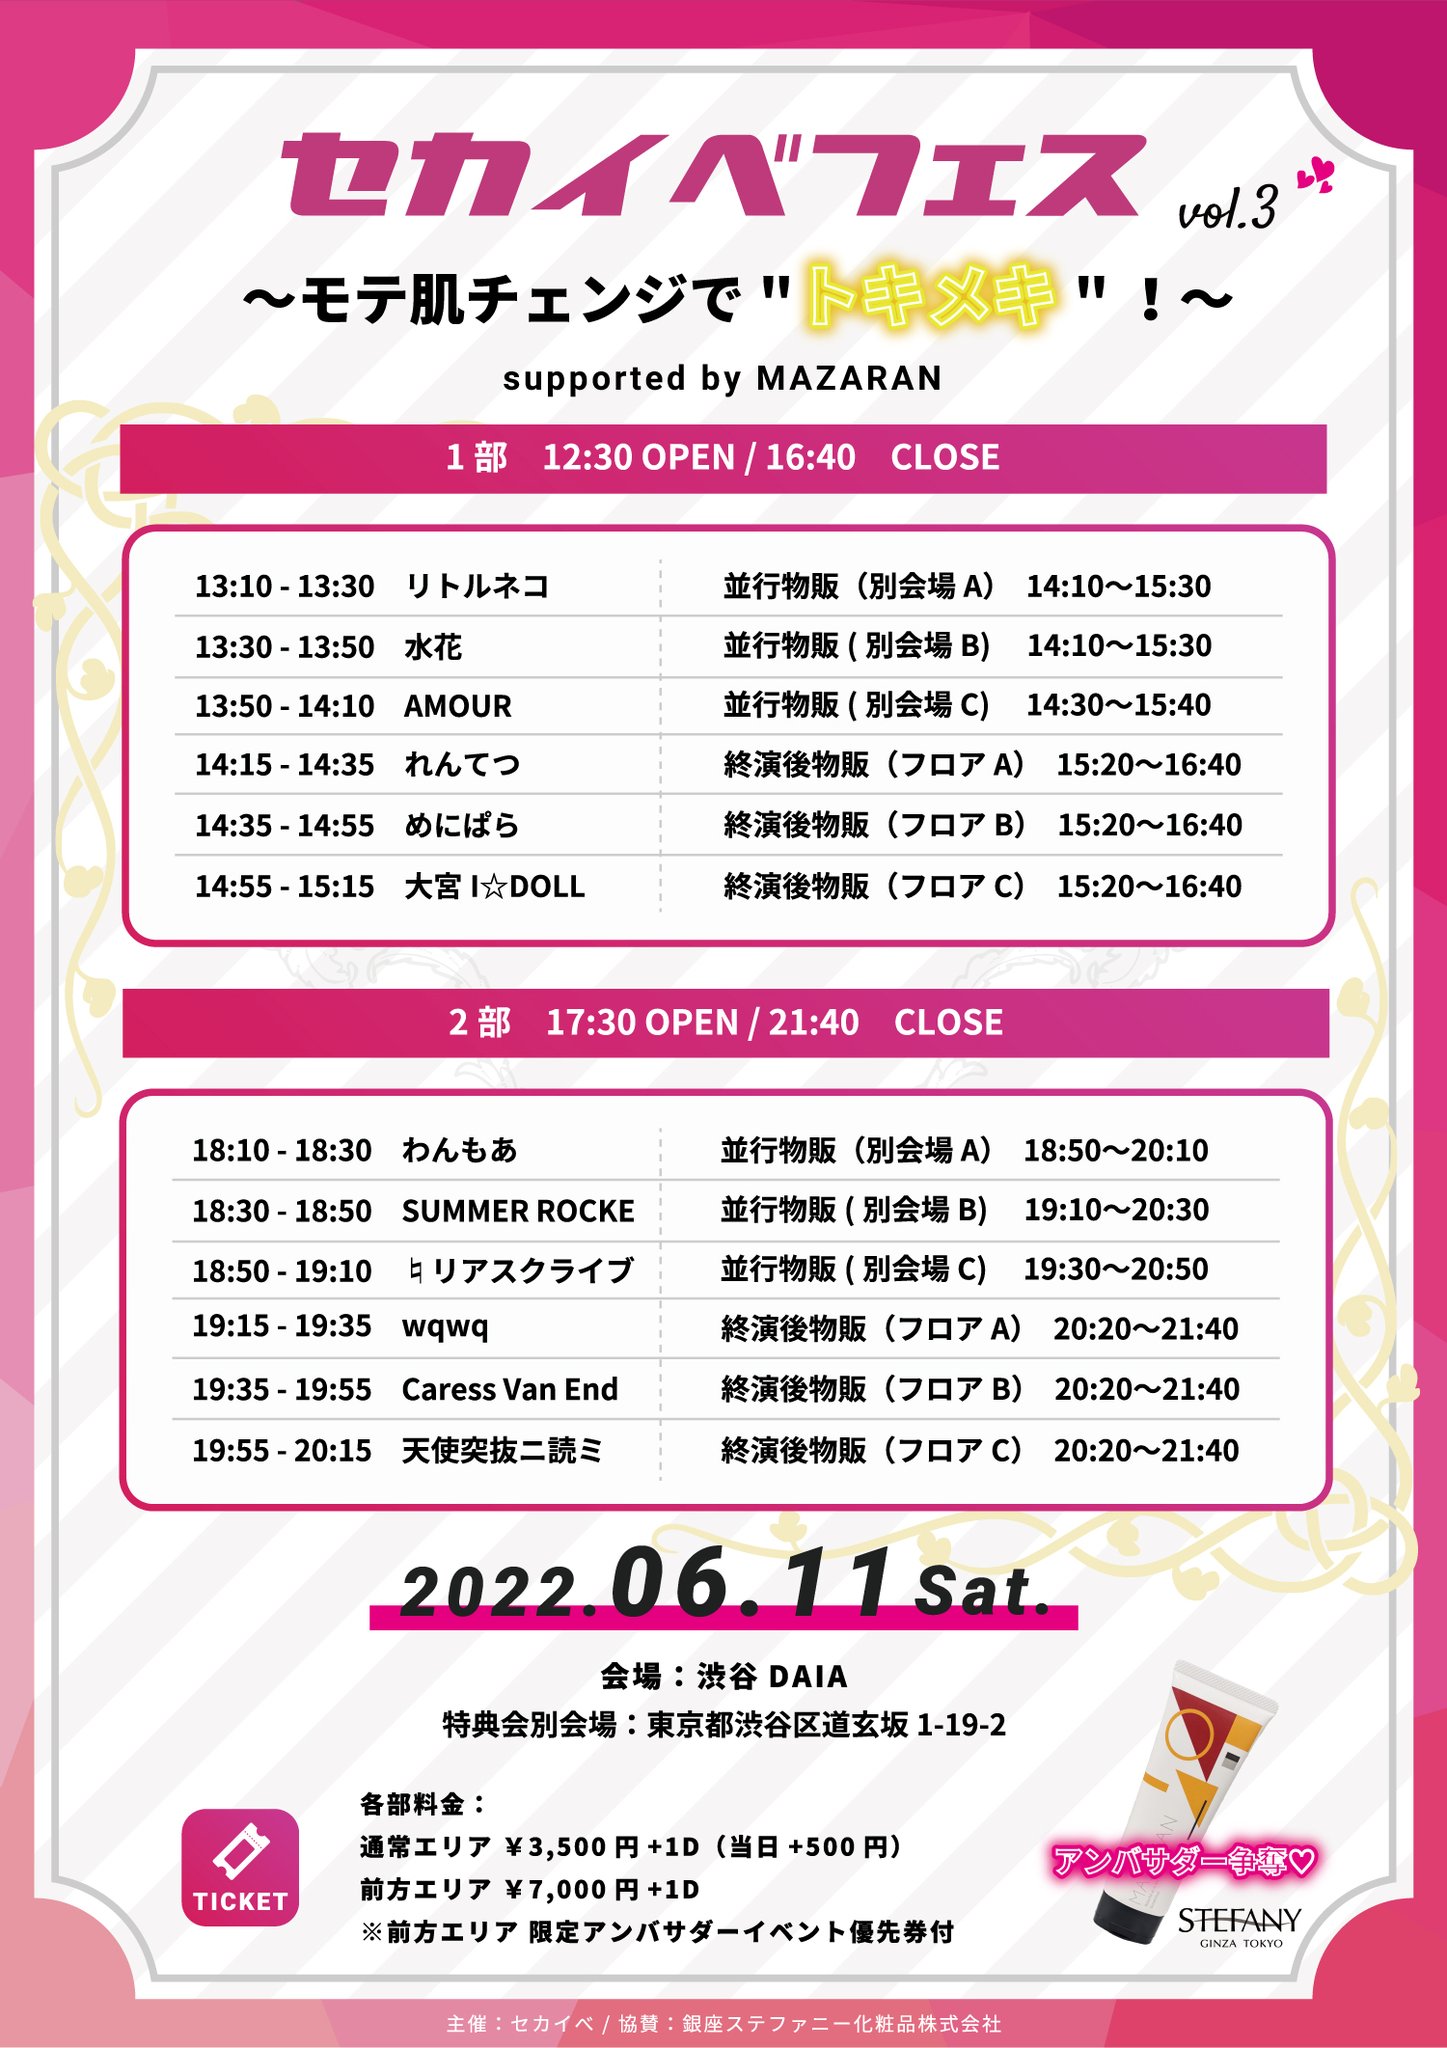 「渋谷DAIA『セカイべフェス vol.3 supported by MAZARAN』ライブ出演」